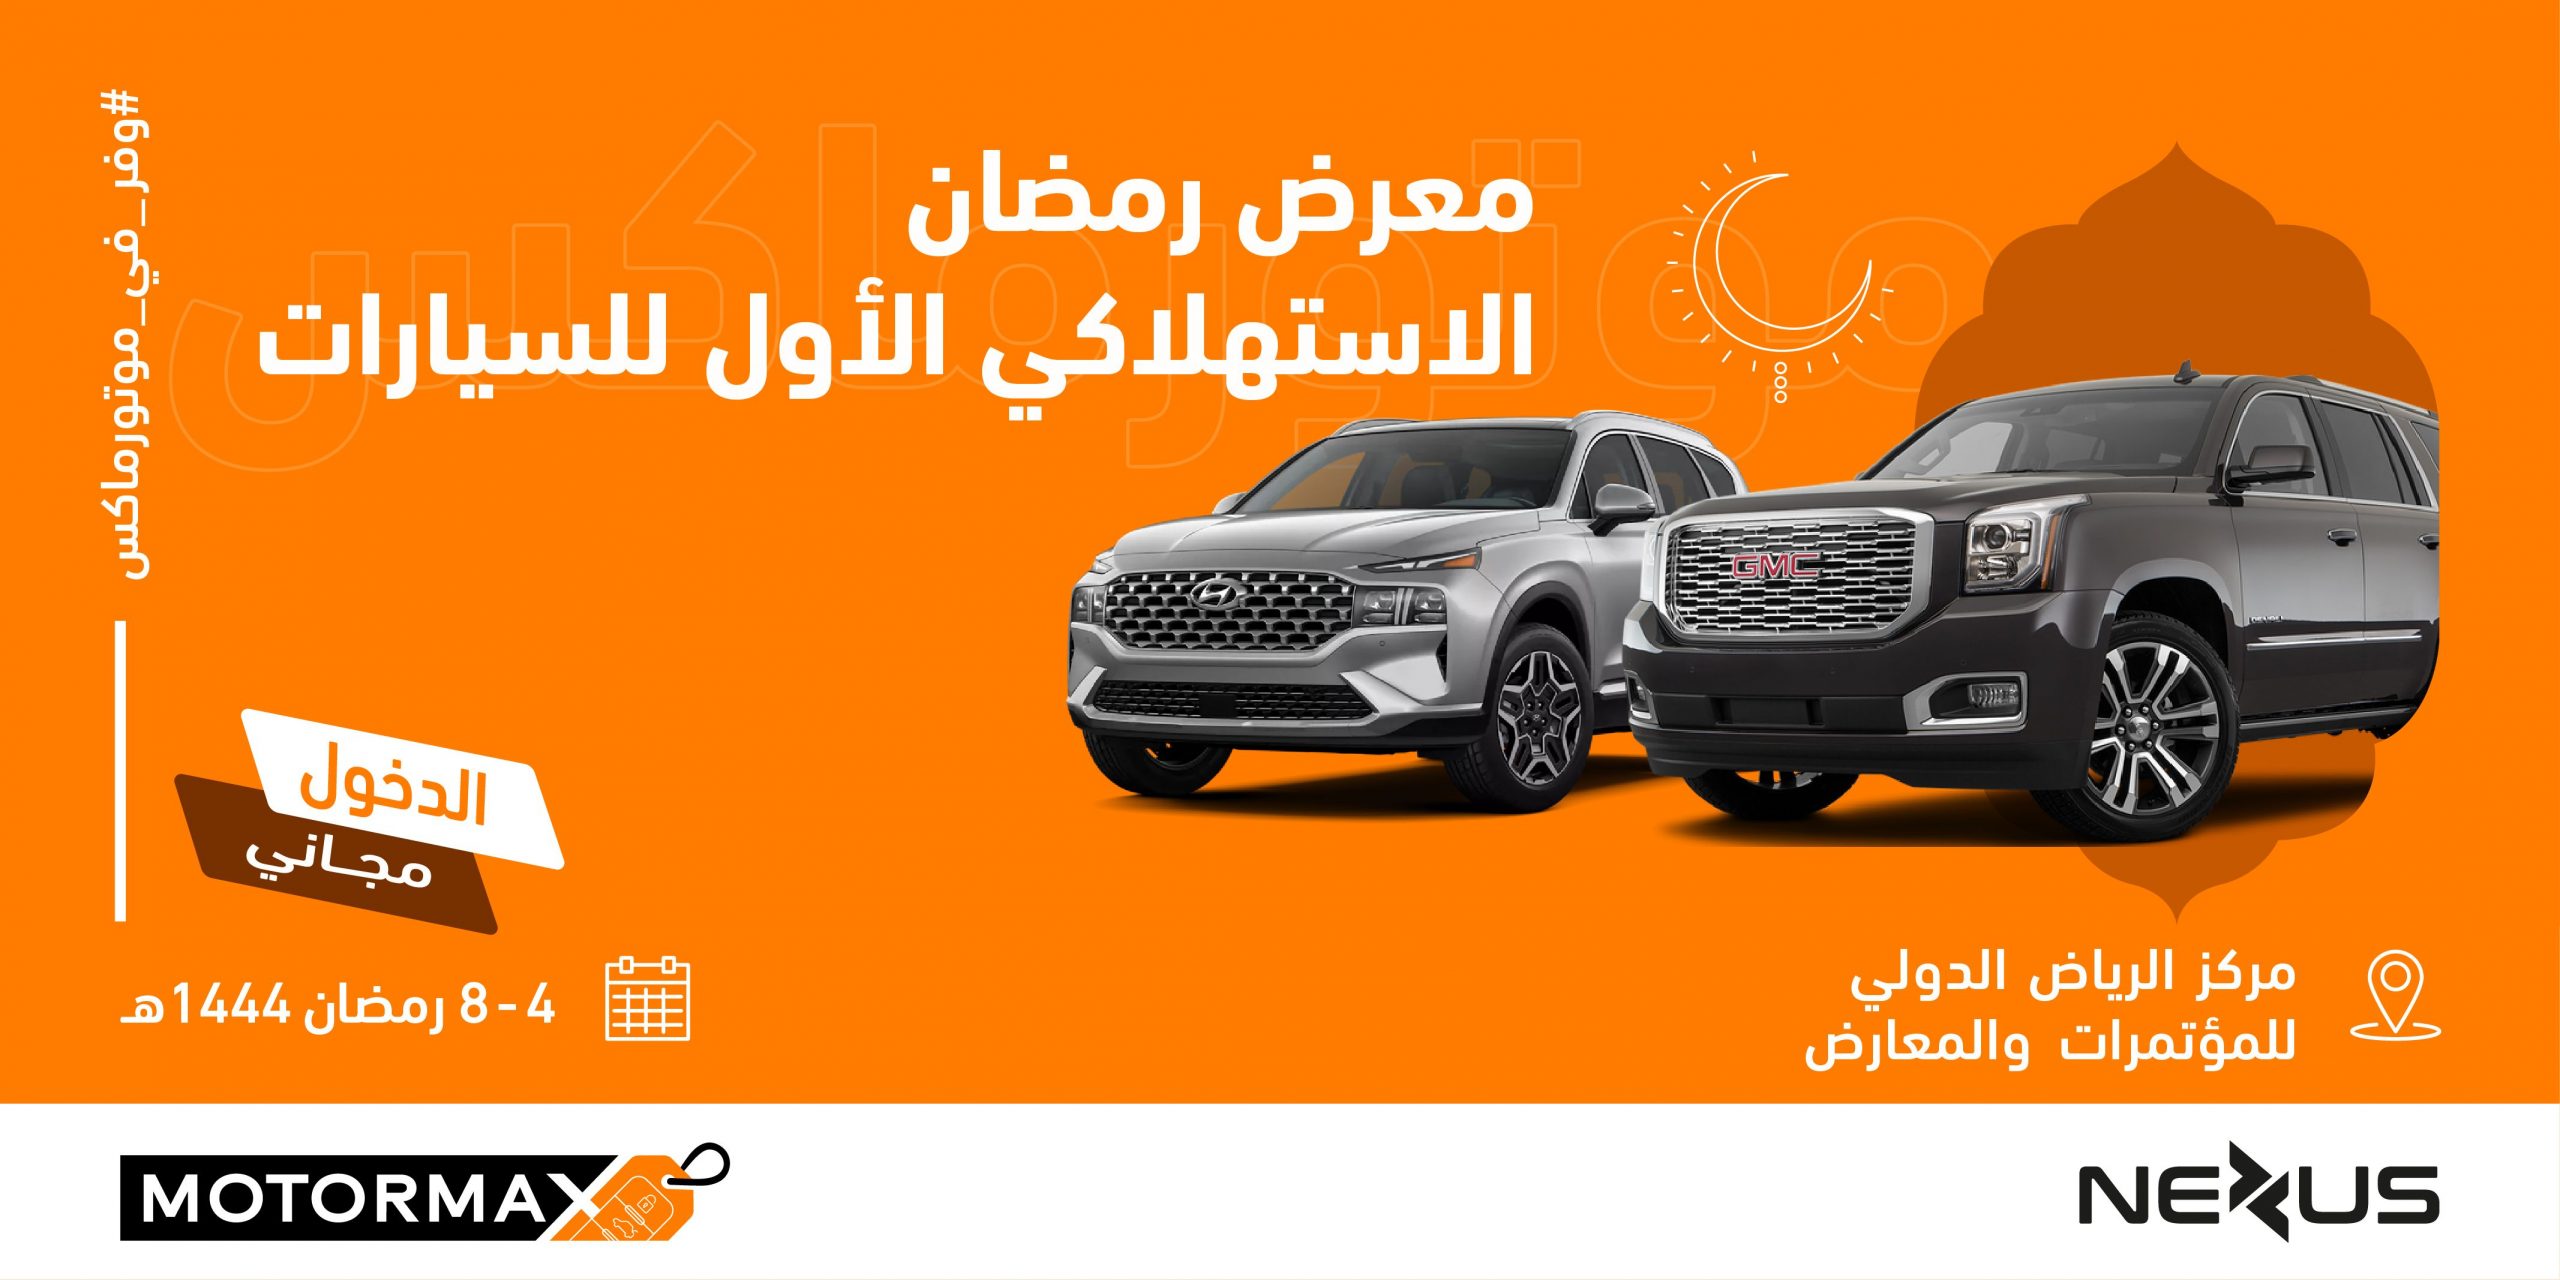 معرض رمضان الاستهلاكي للسيارات "موتورماكس" يستقبل زواره خلال شهر رمضان المبارك في مركز الرياض الدولي للمؤتمرات والمعارض 20